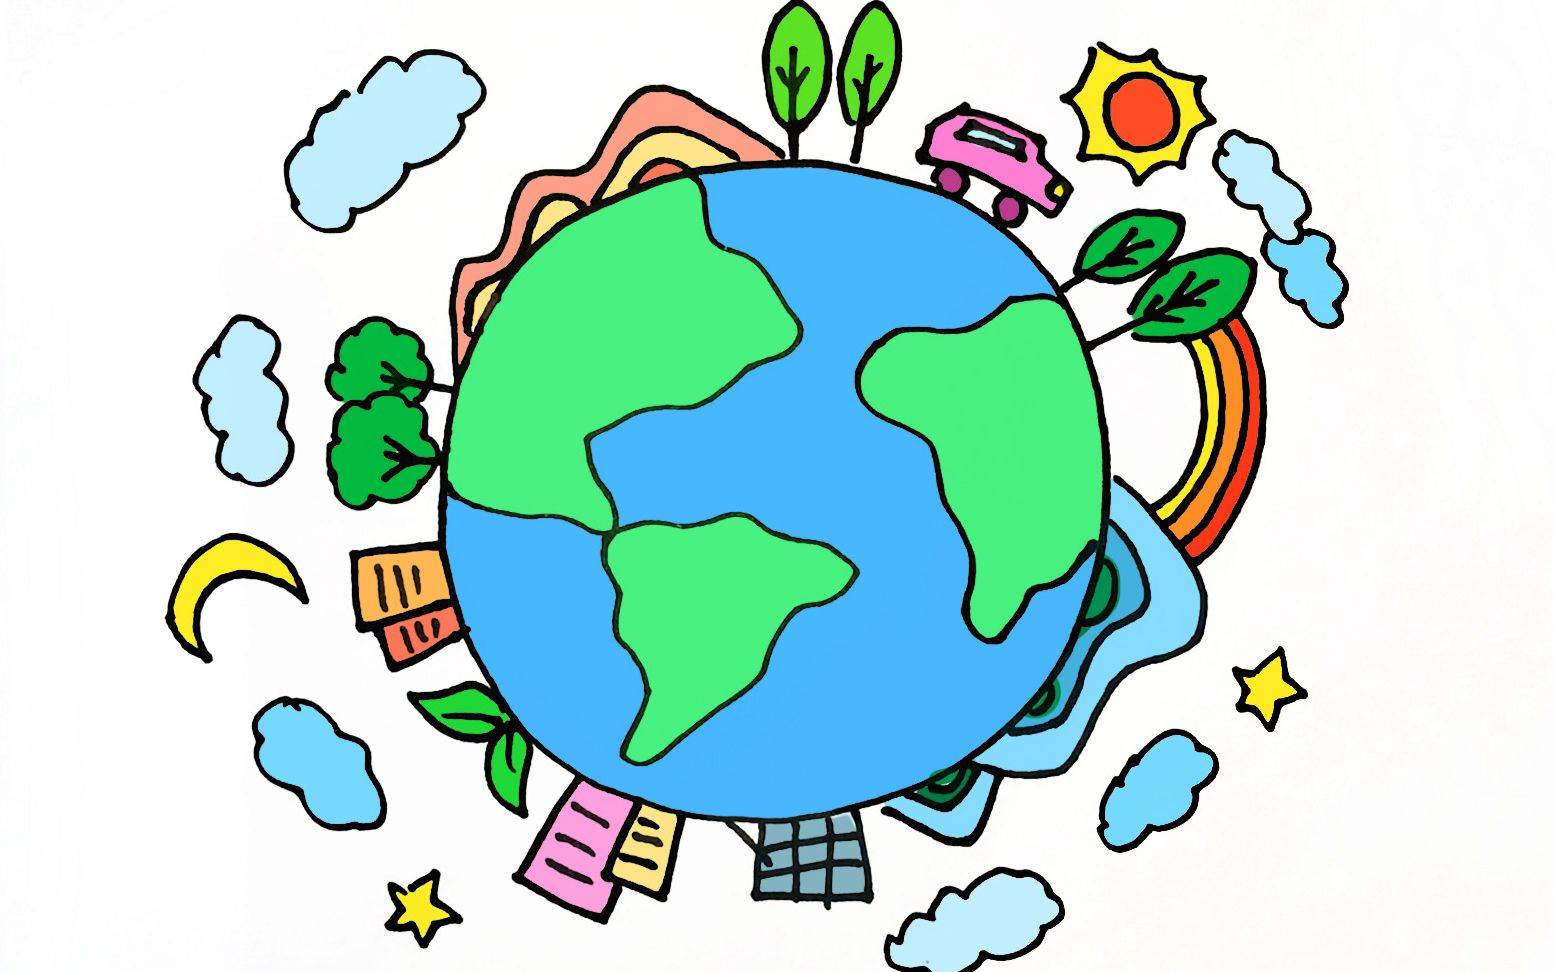 地球简笔画画法步骤这是一组地球简笔画彩色的内容,希望能满足您的